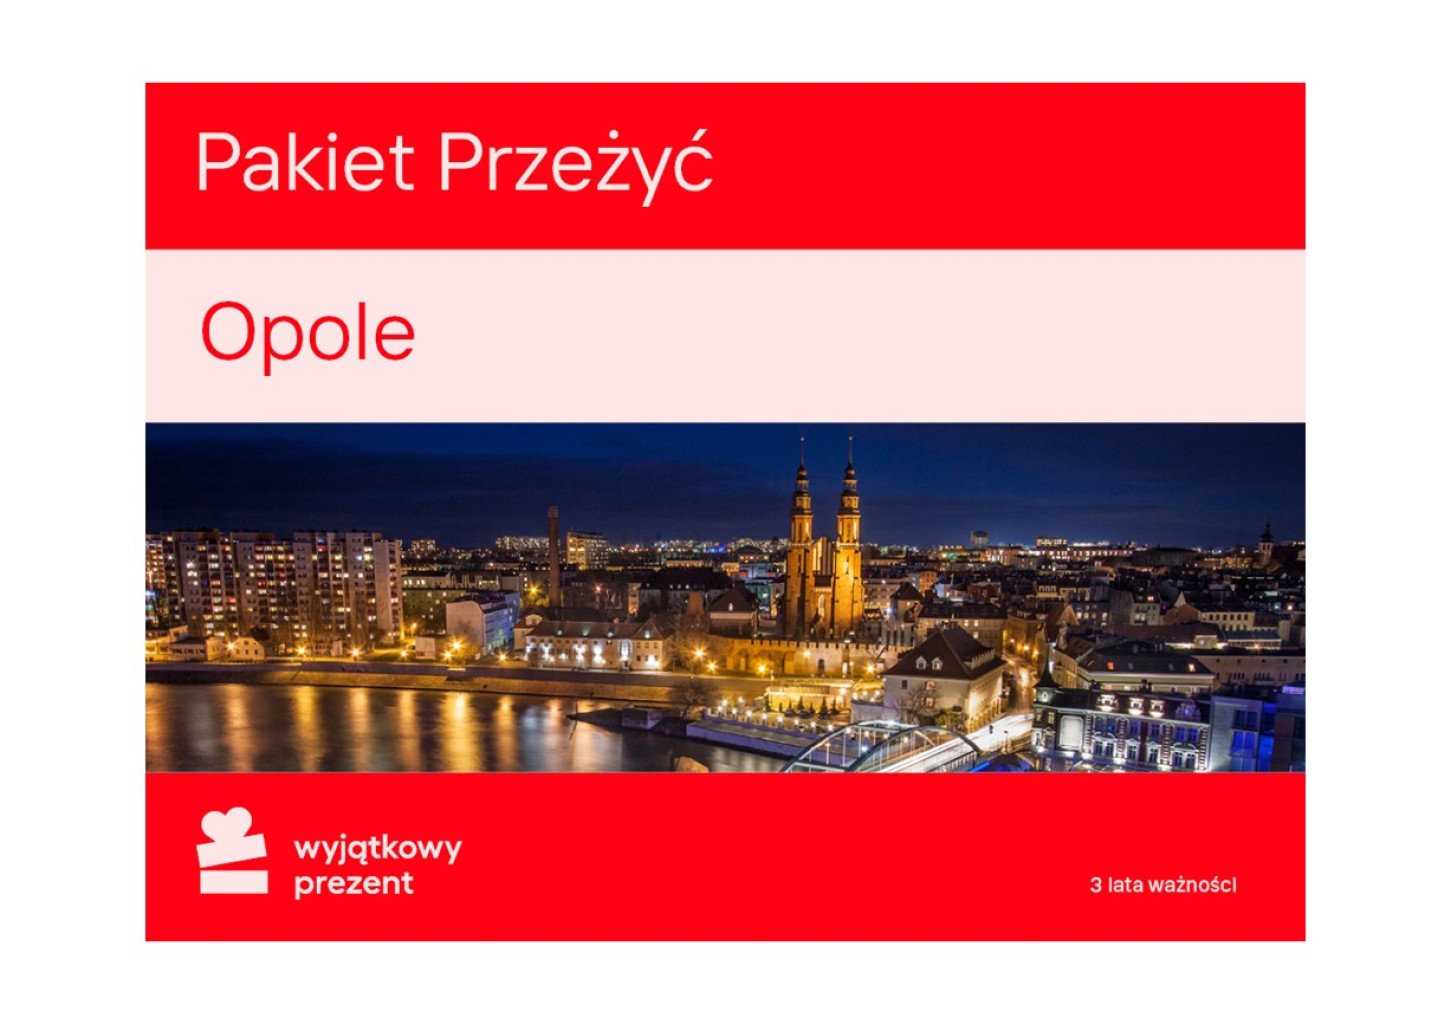 Pakiet Przeżyć Opole